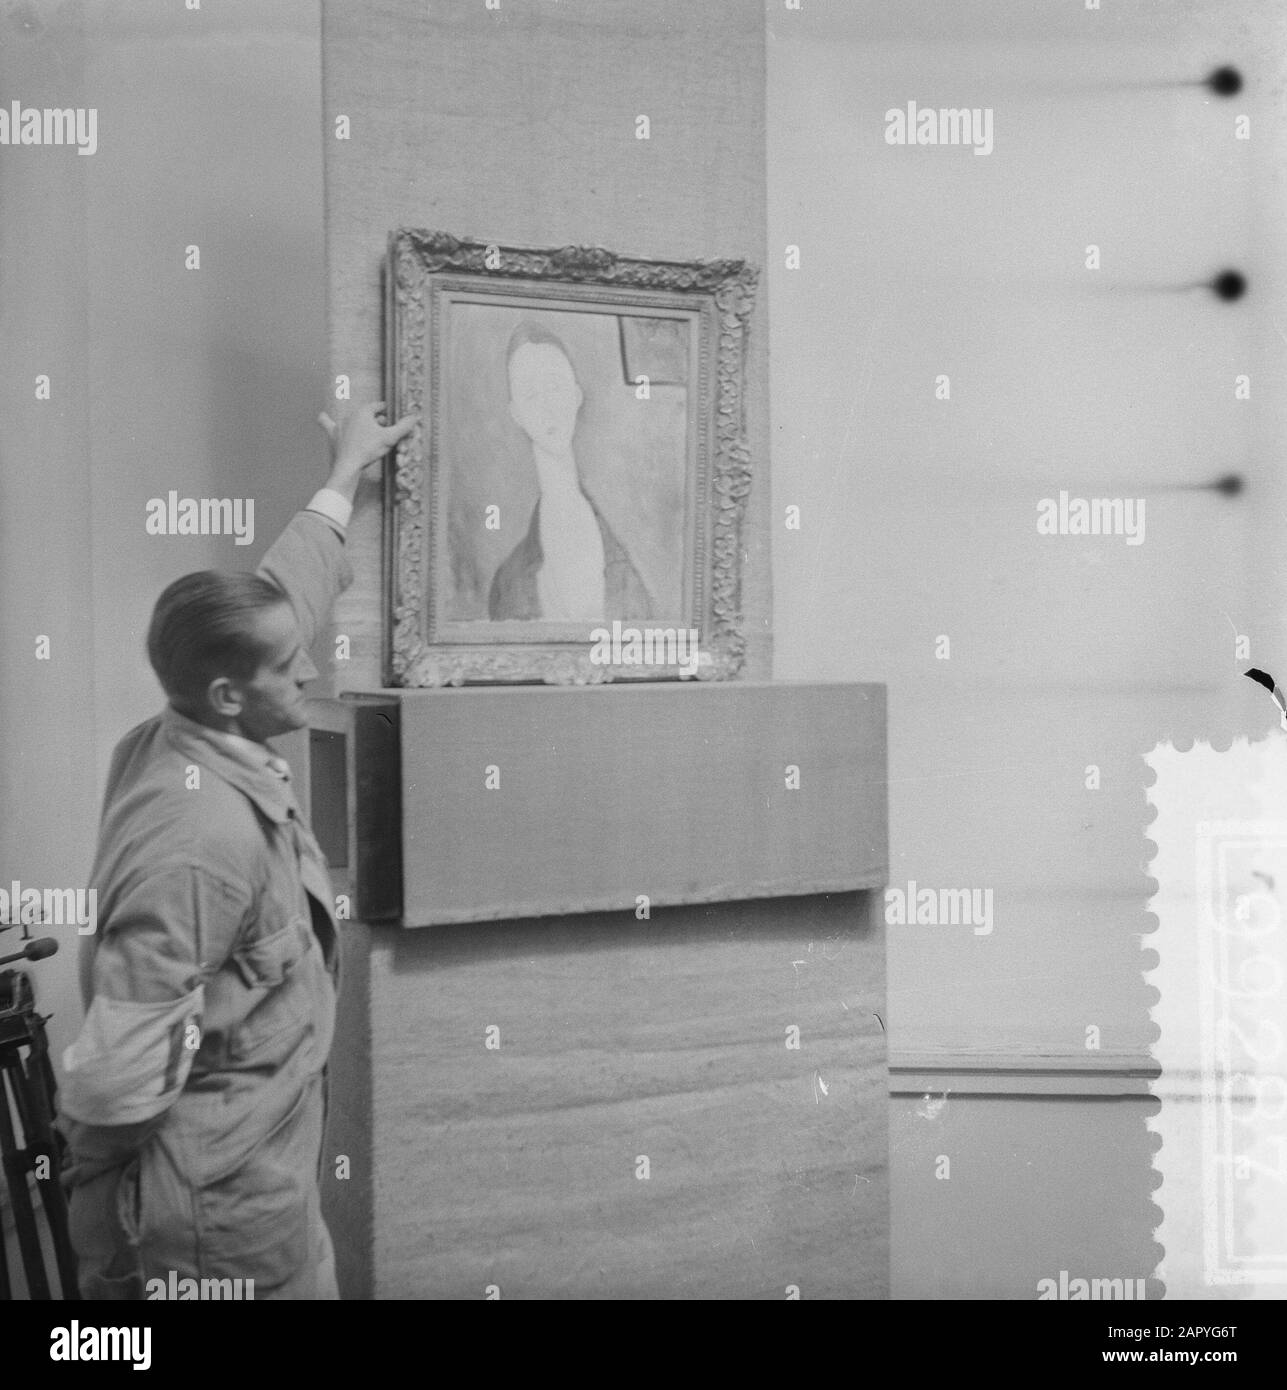 Auktionssammlung Regnault in Amsterdam, Portrait von Lunia Cekowska von Modigliani brings f. 22.000, - am Datum: 22. Oktober 1958 Ort: Amsterdam, Noord-Holland Schlüsselwörter: Sammlungen, Porträts, Auktionen Personenname: Regnault, P.A. Stockfoto